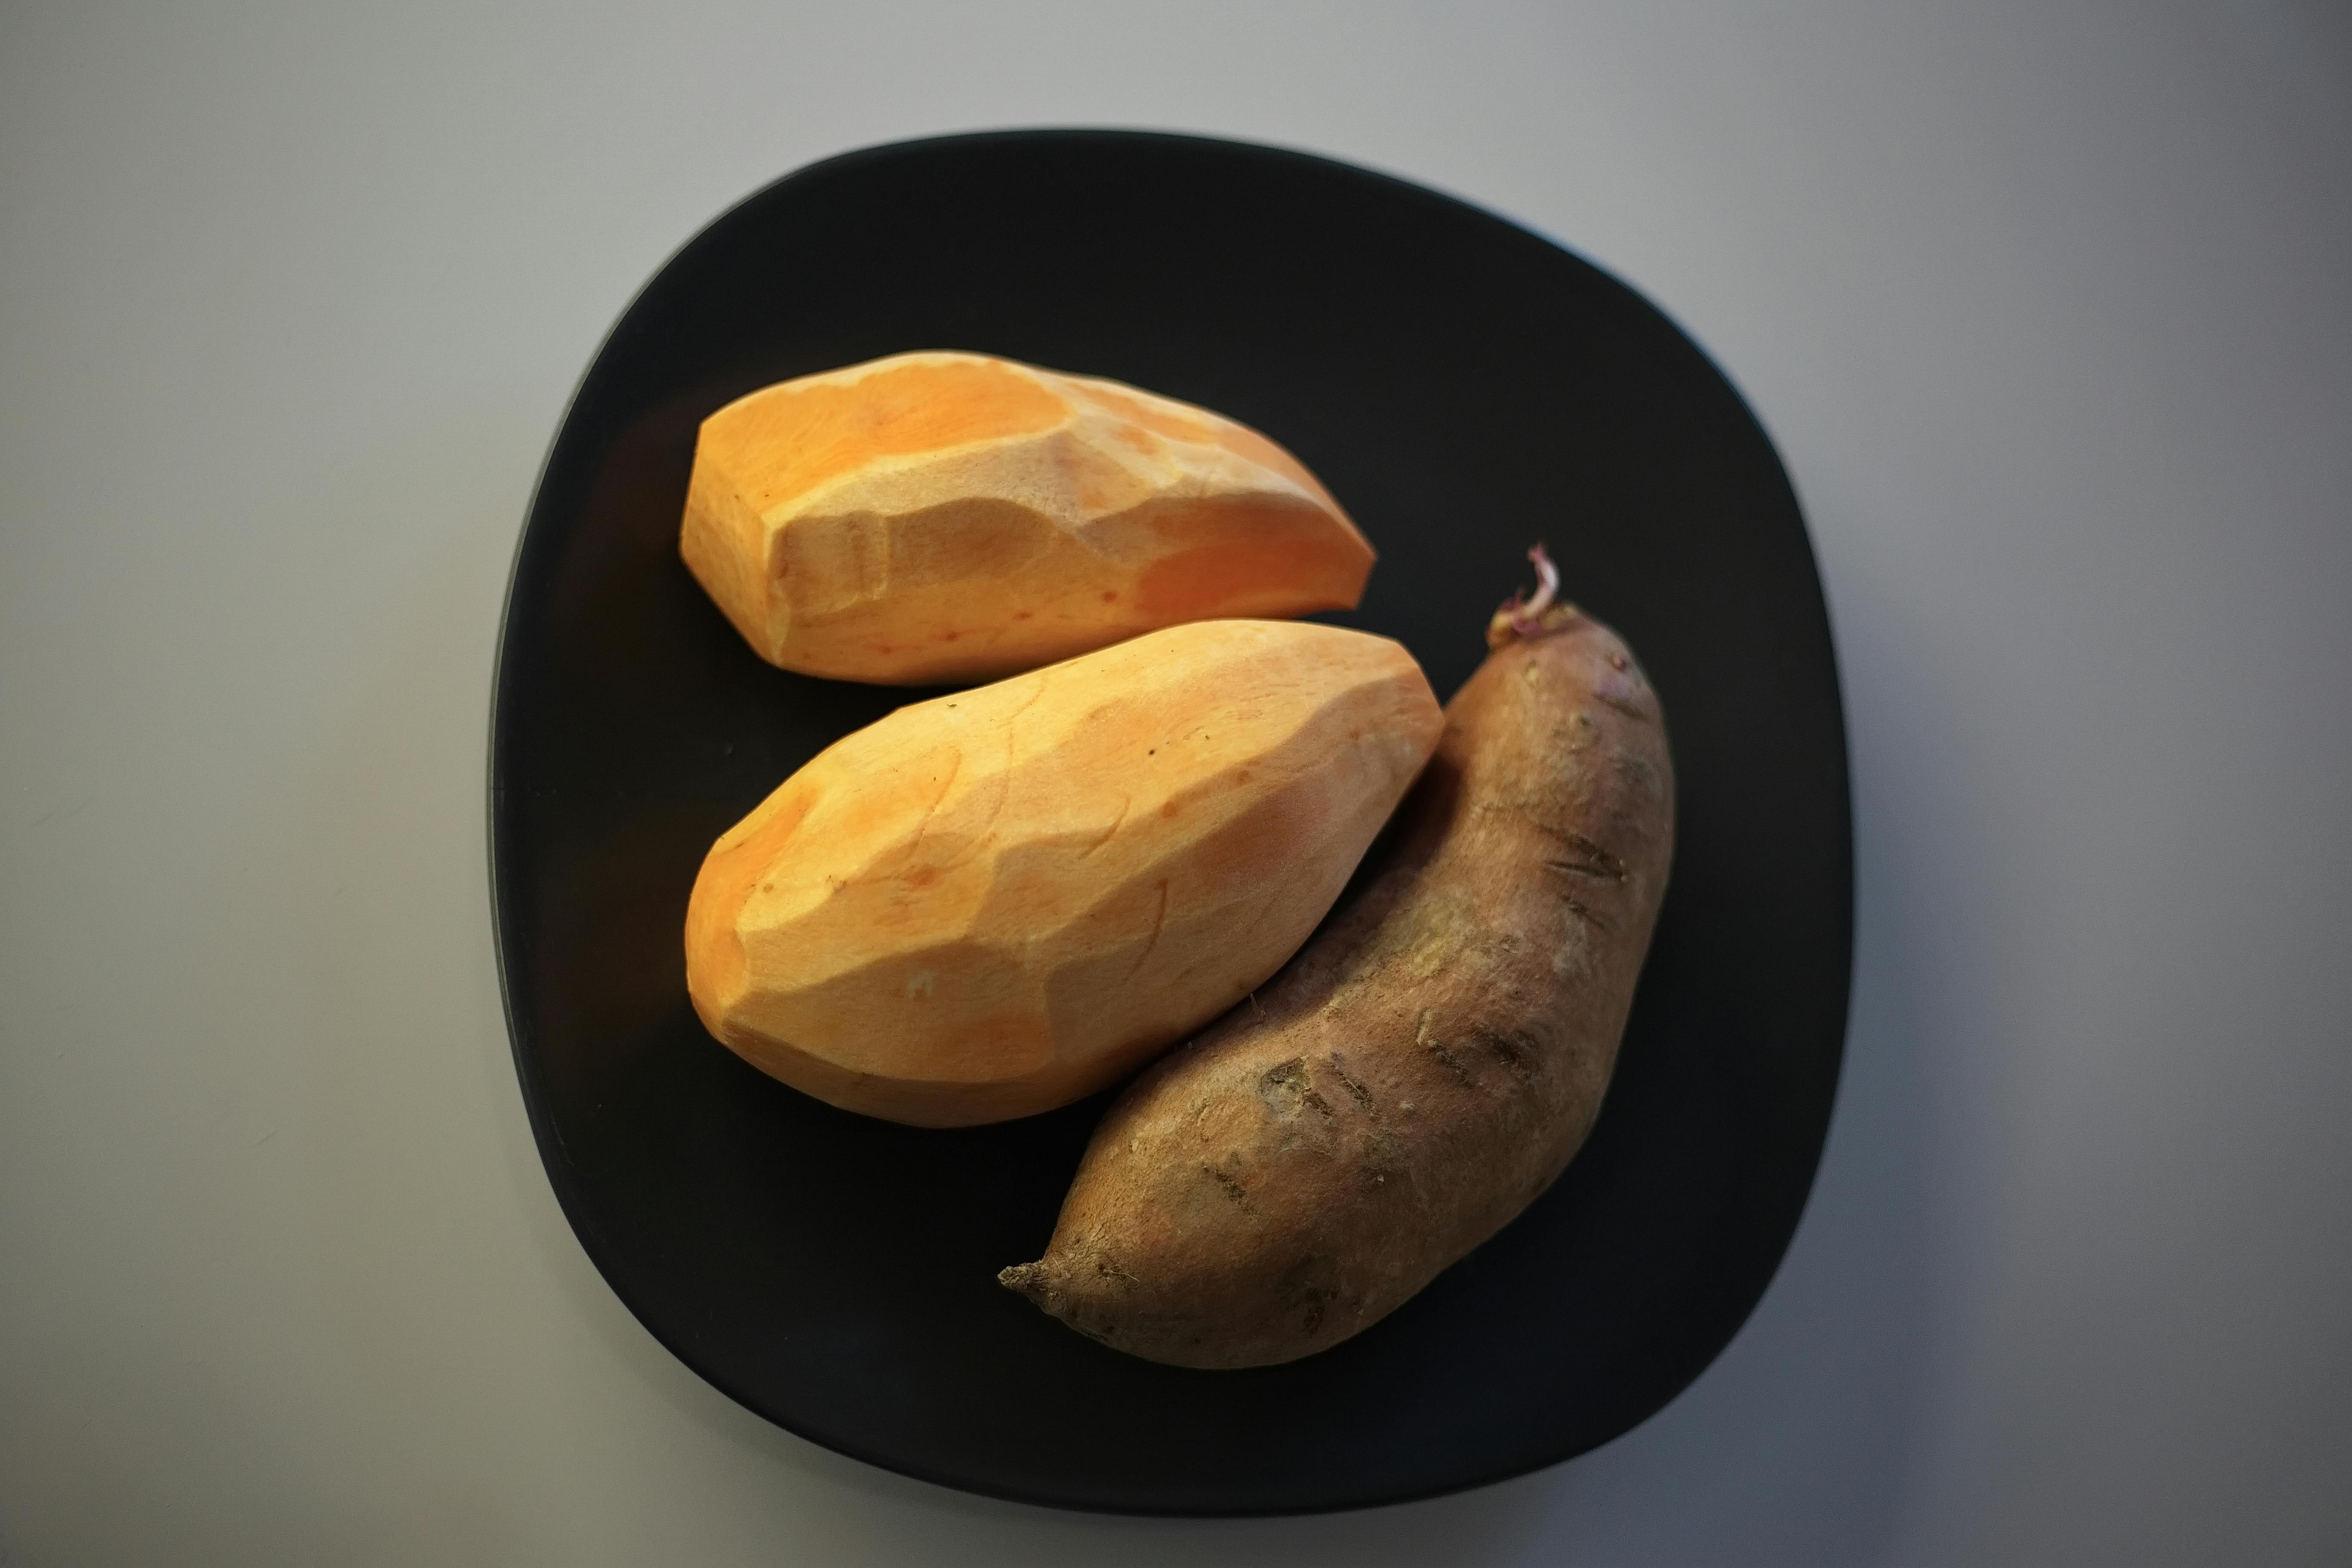 4.000+ melhores imagens de Batata Frita · Download 100% grátis